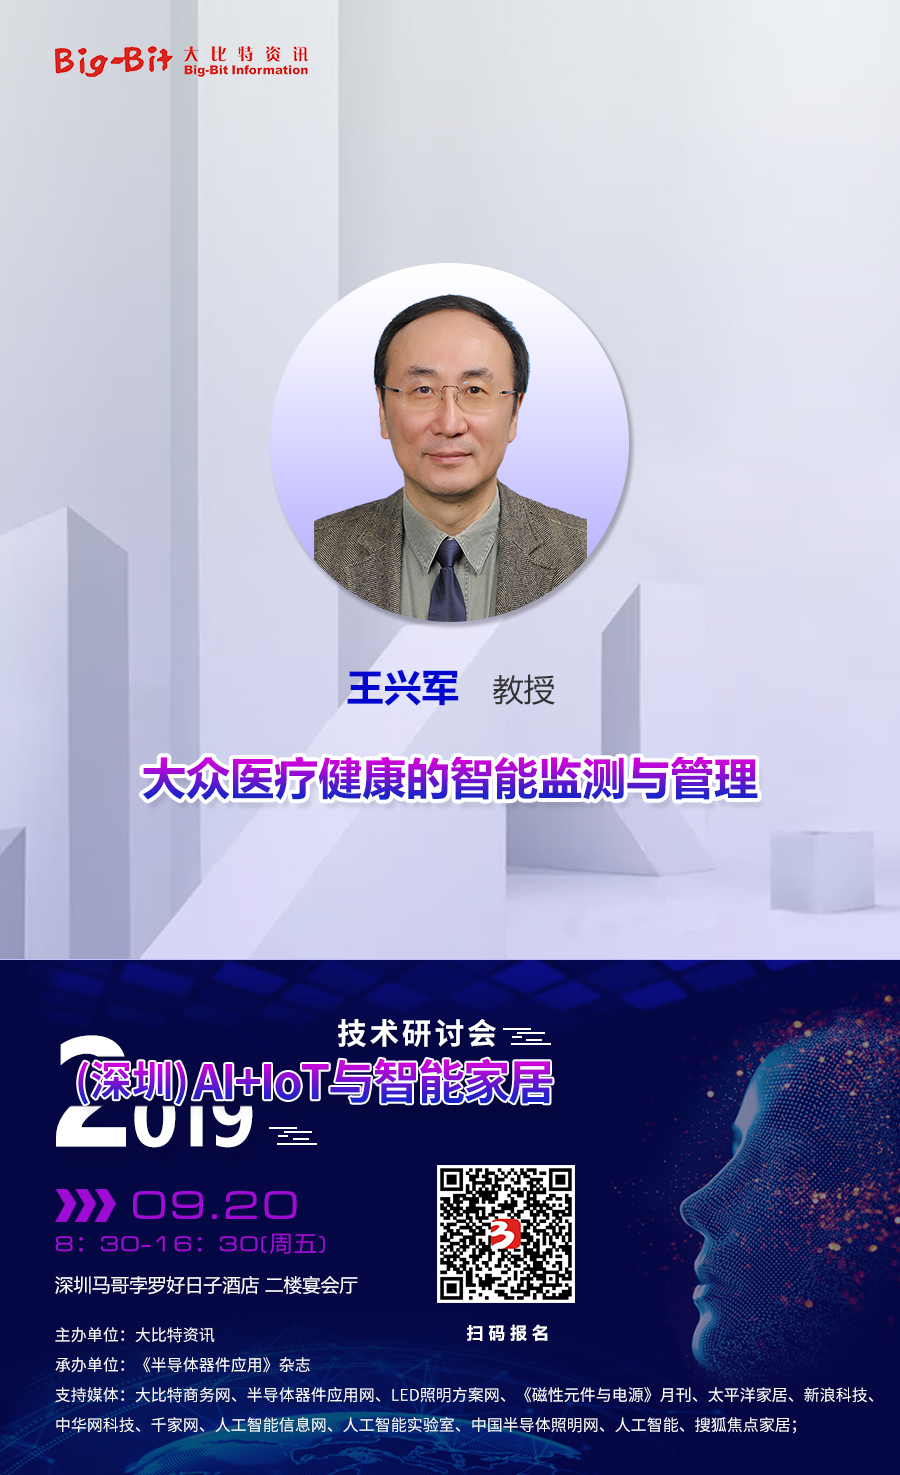 清华大学深圳国际研究生院教授王兴军将出席“2019'(深圳)AI+IoT与智能家居技术研讨会”